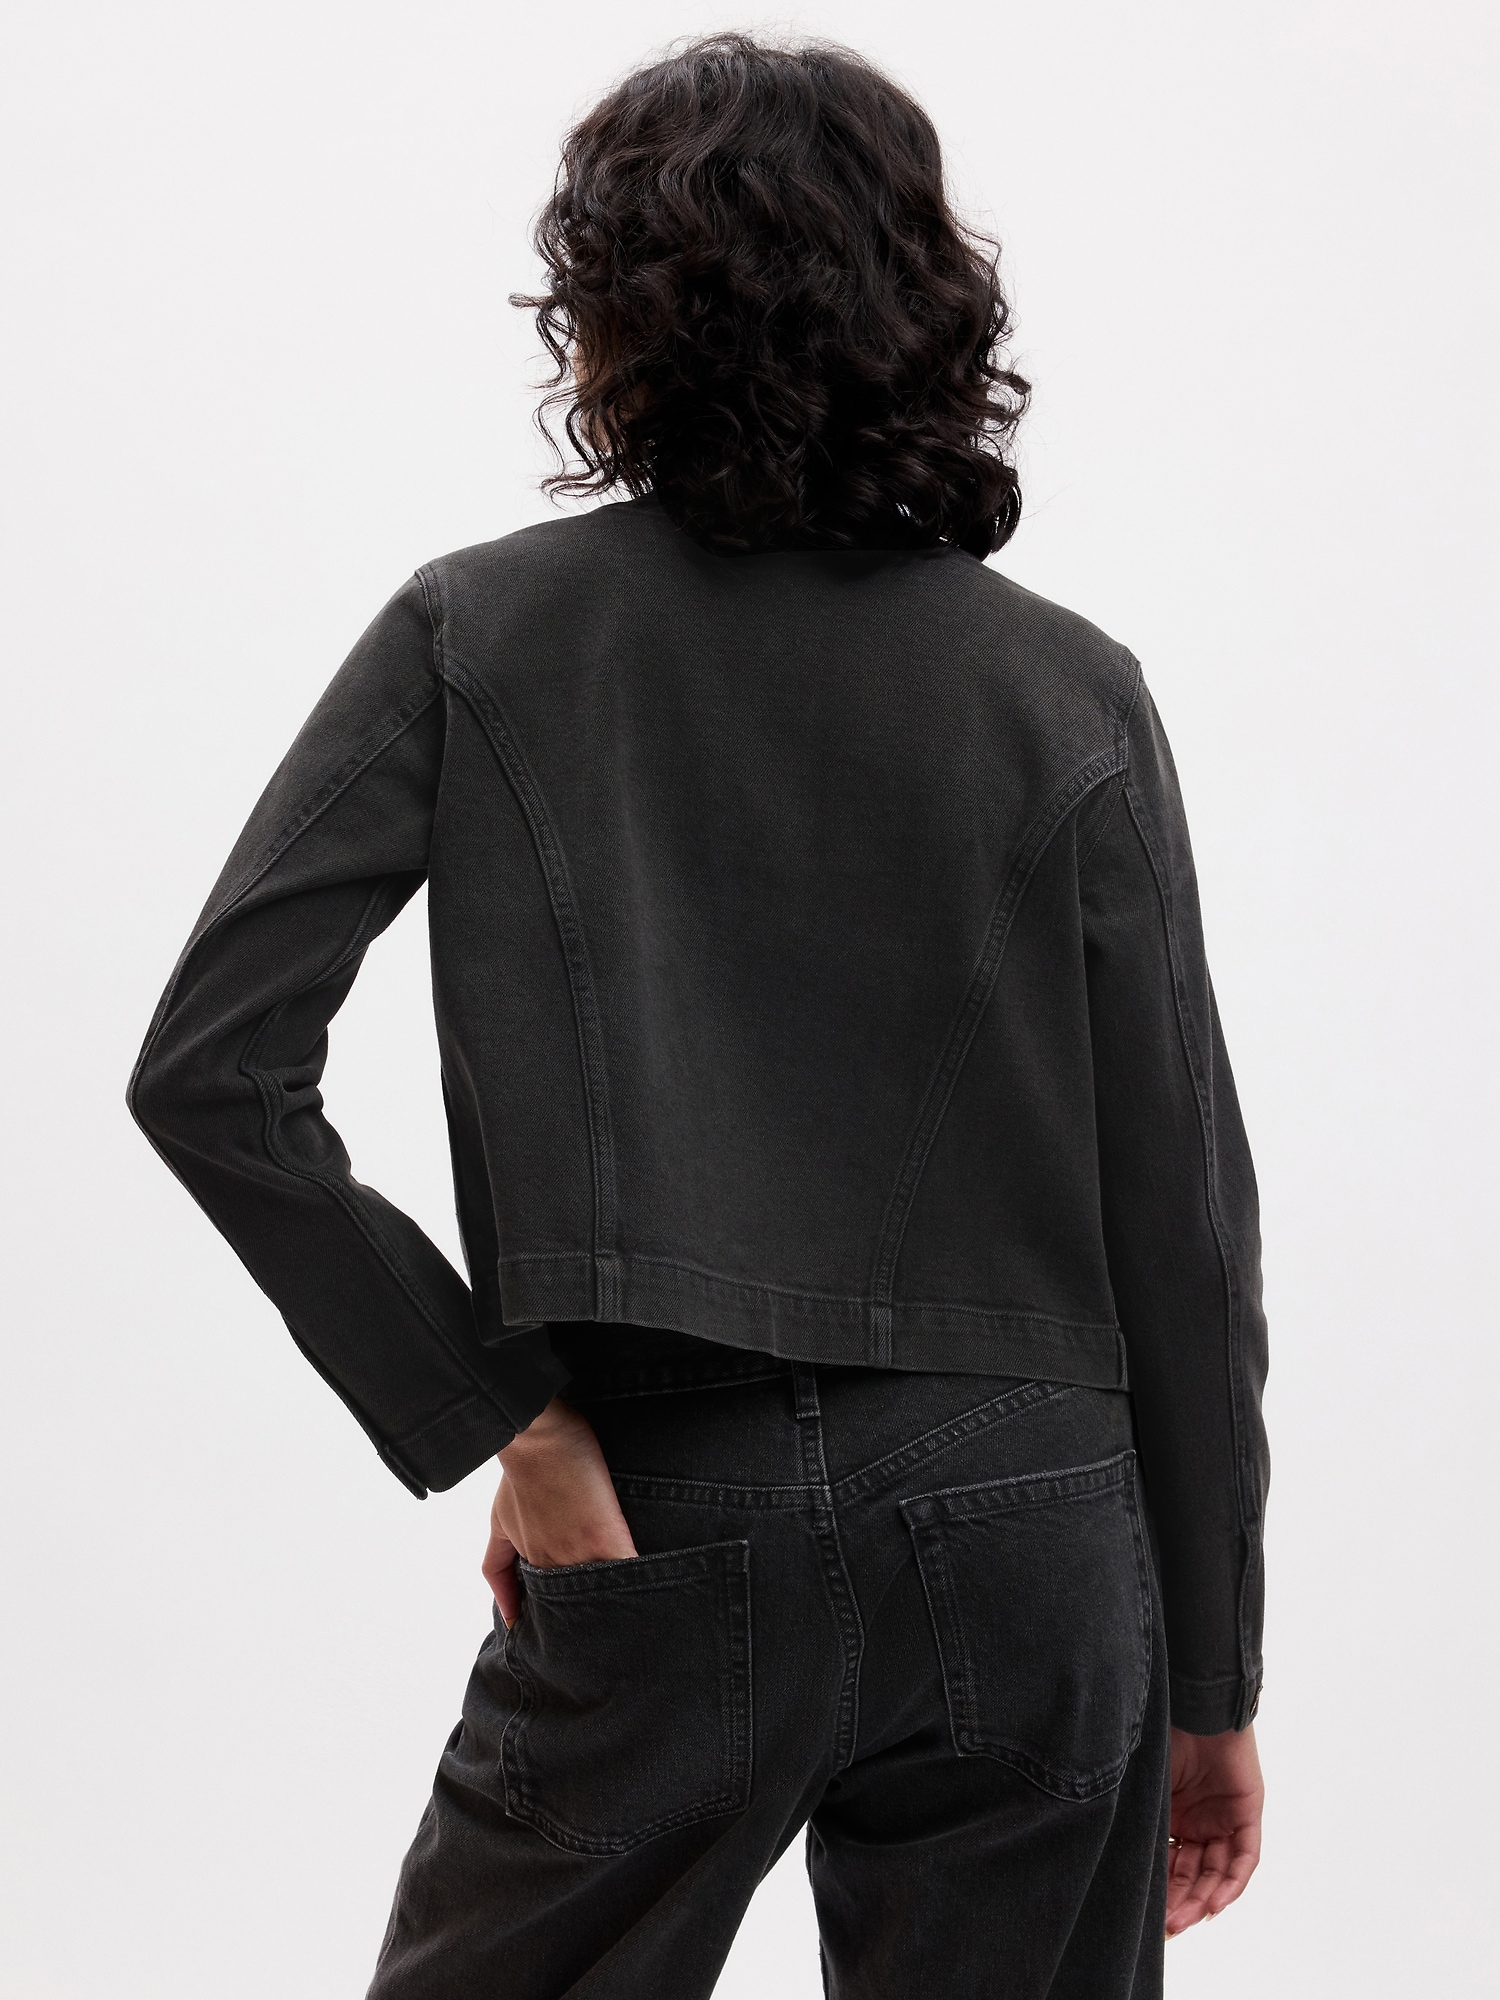 Collarless Denim Jacket | Indigo Collection | M&S